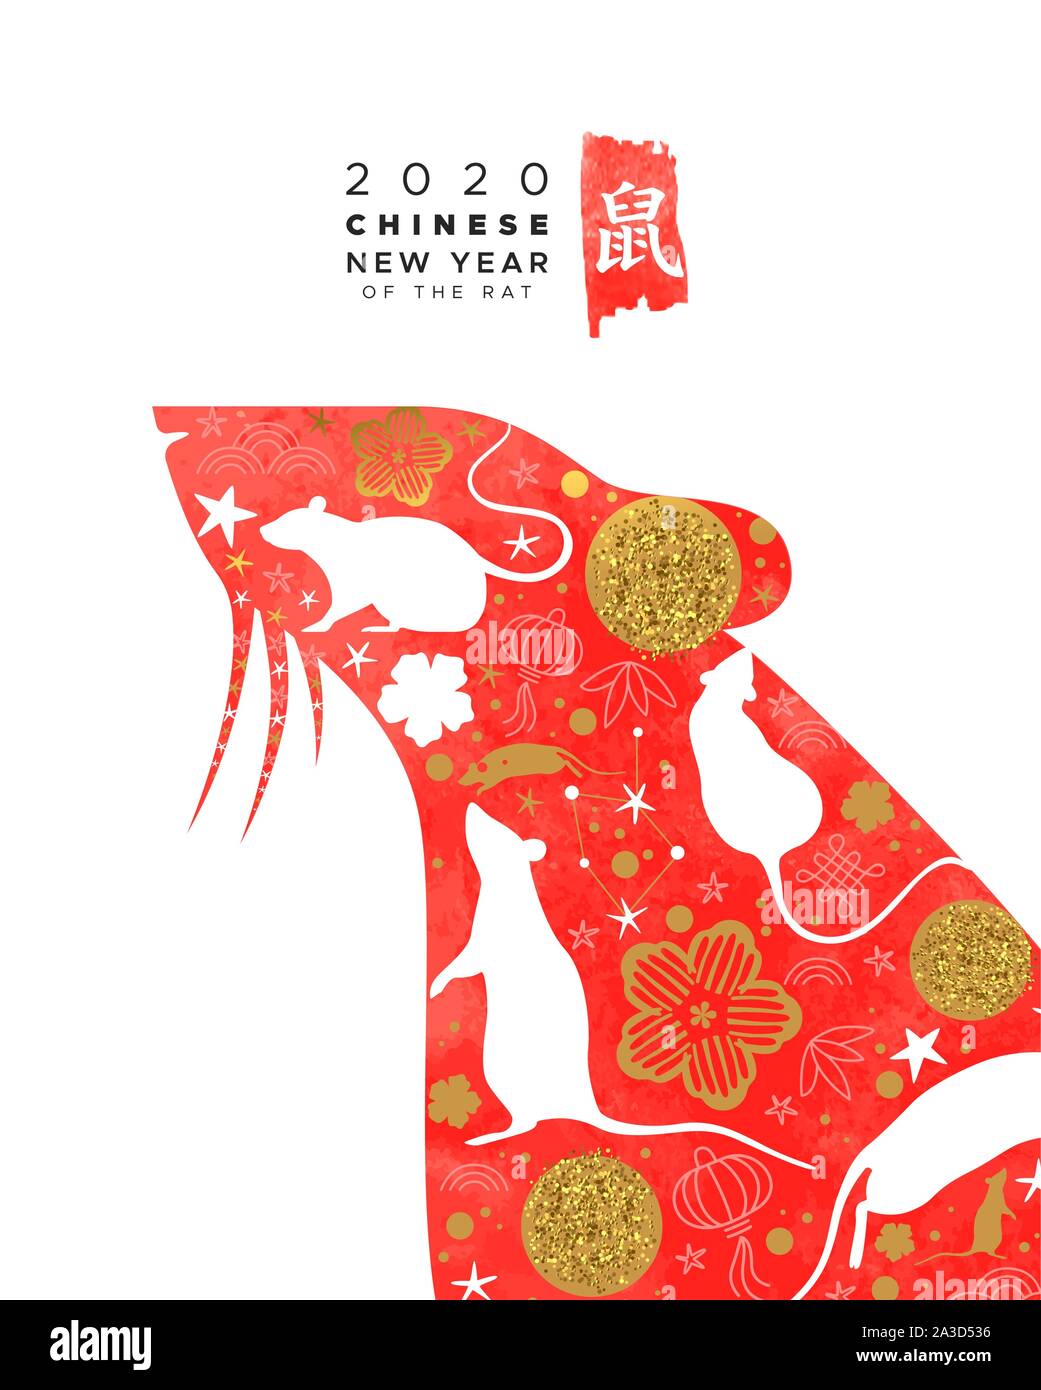 Chinesisches Neujahr 2020 Grußkarte von Red Aquarell maus Tier mit modernen gold Astrologie doodle Symbole. Kalligraphie symbol Übersetzung: Ratte. Stock Vektor